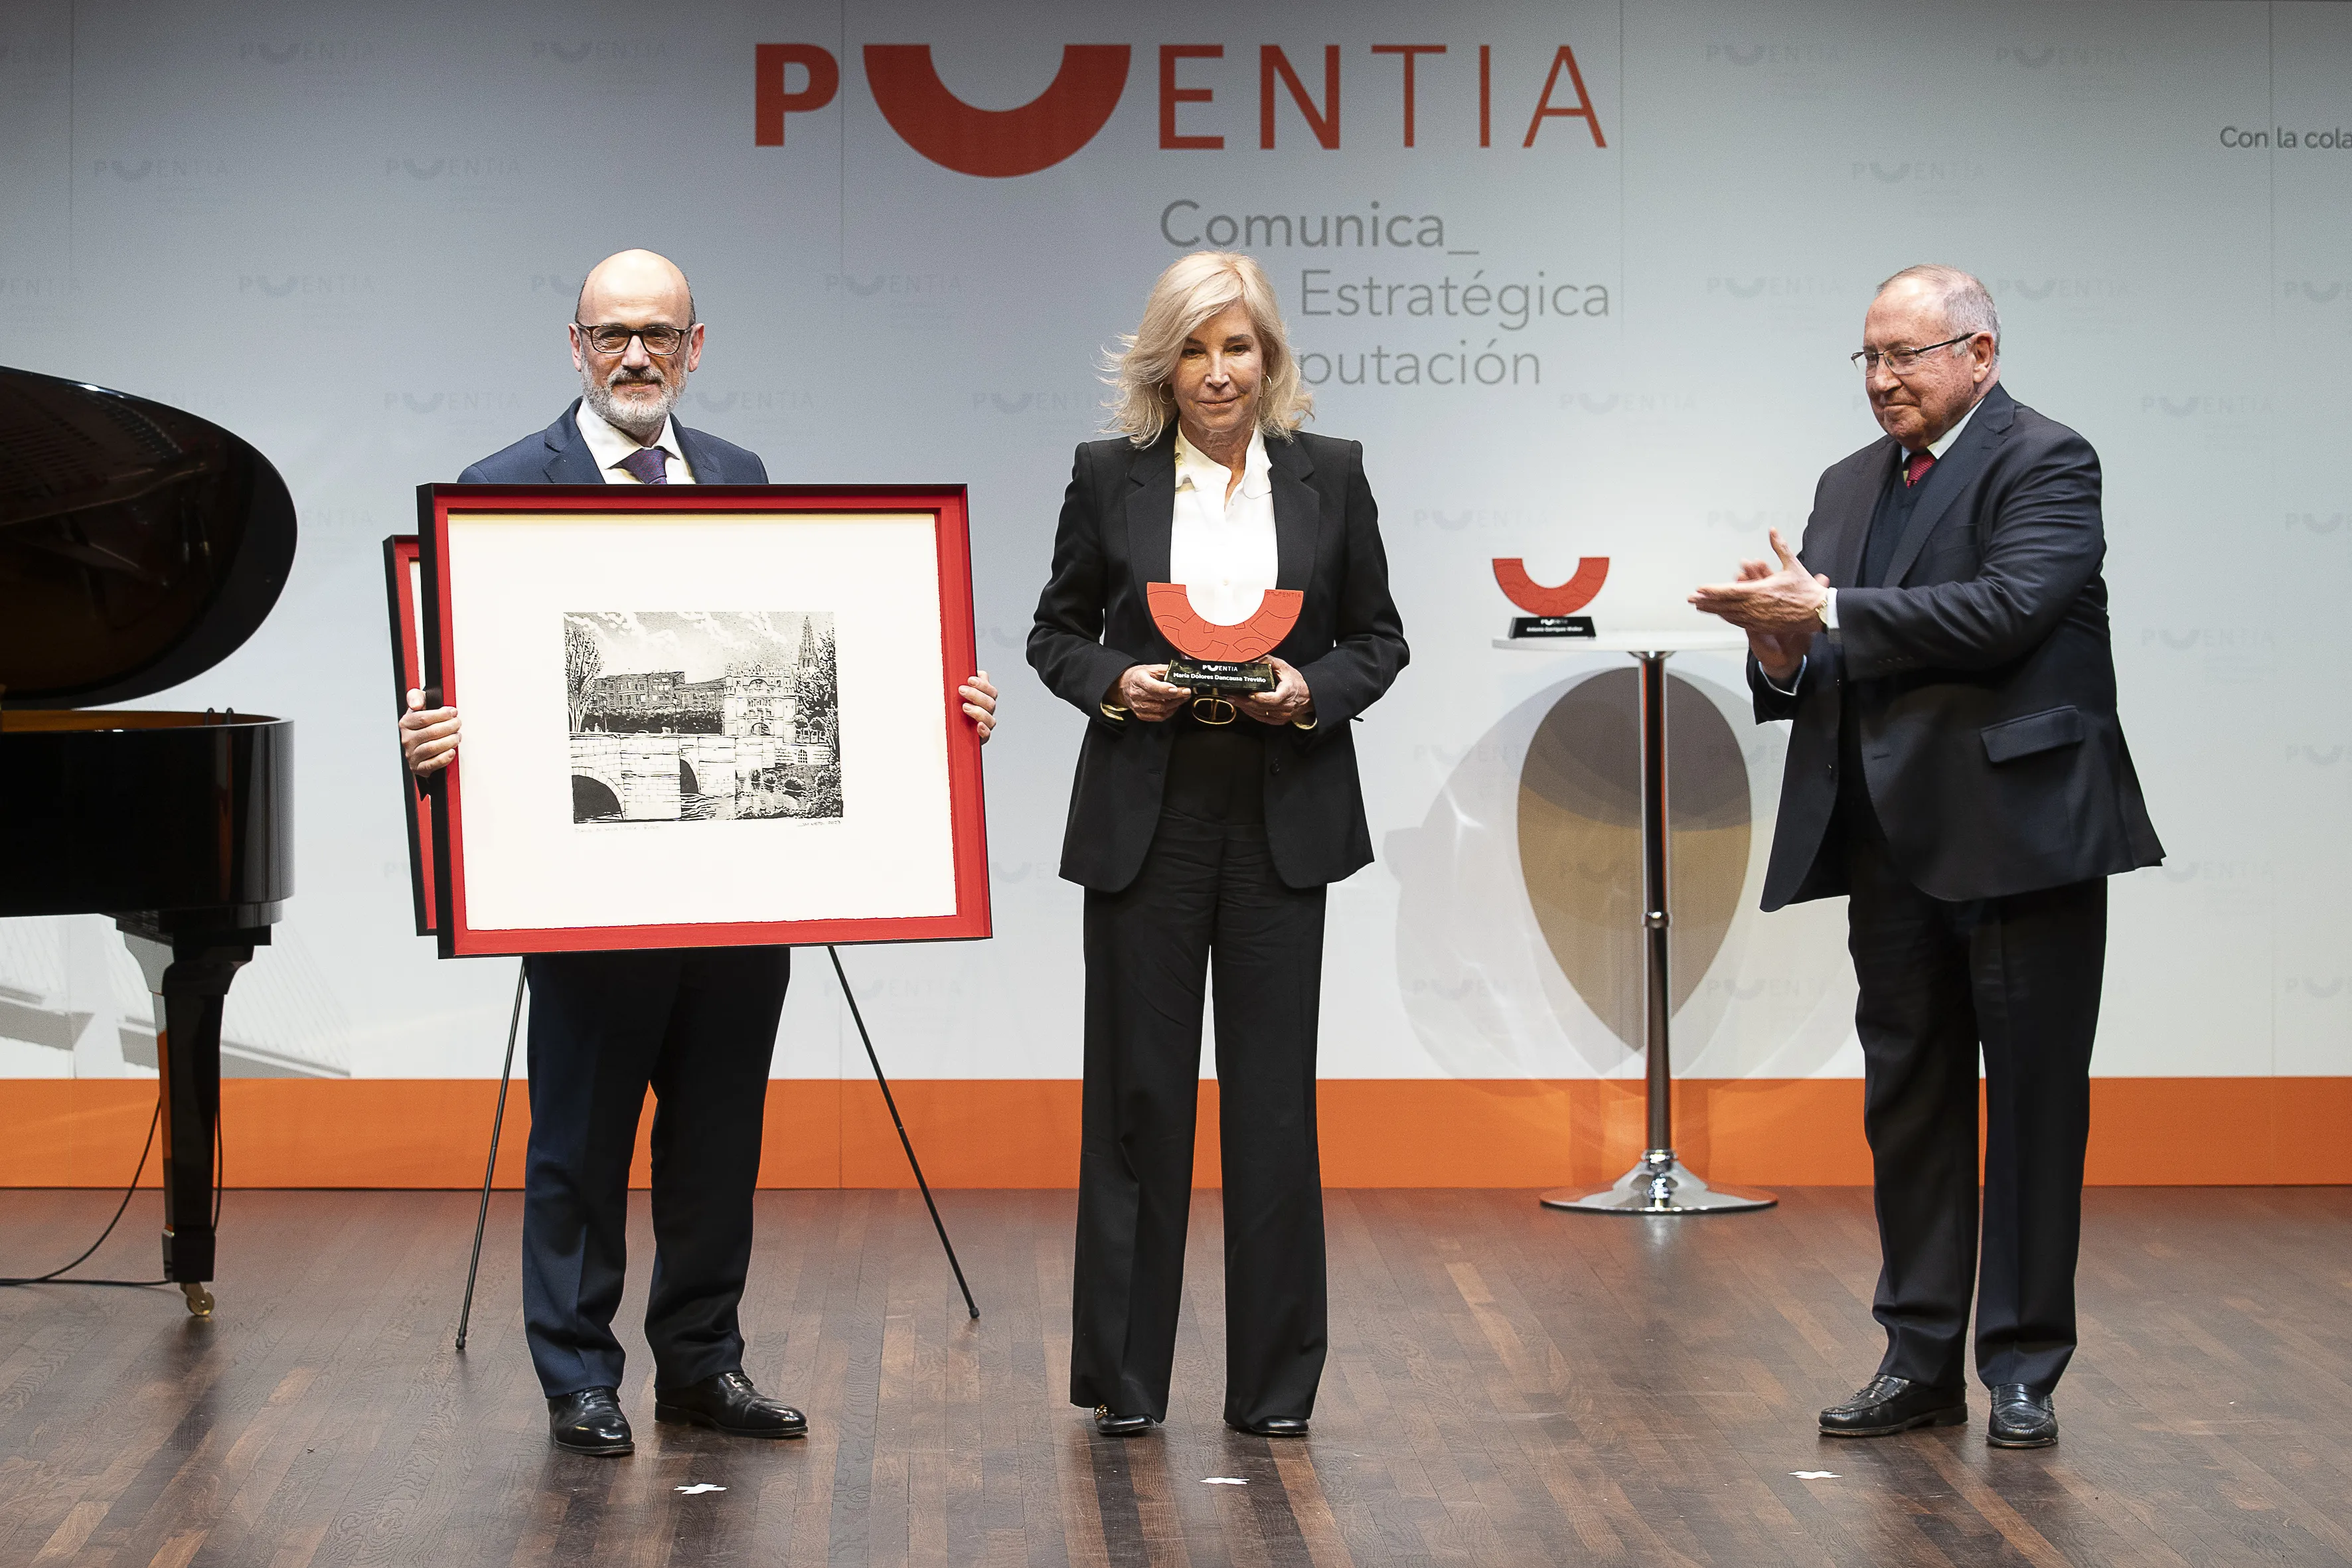 El presidente de Cámara de España entrega el Premio Puentia a María Dolores Dancausa 